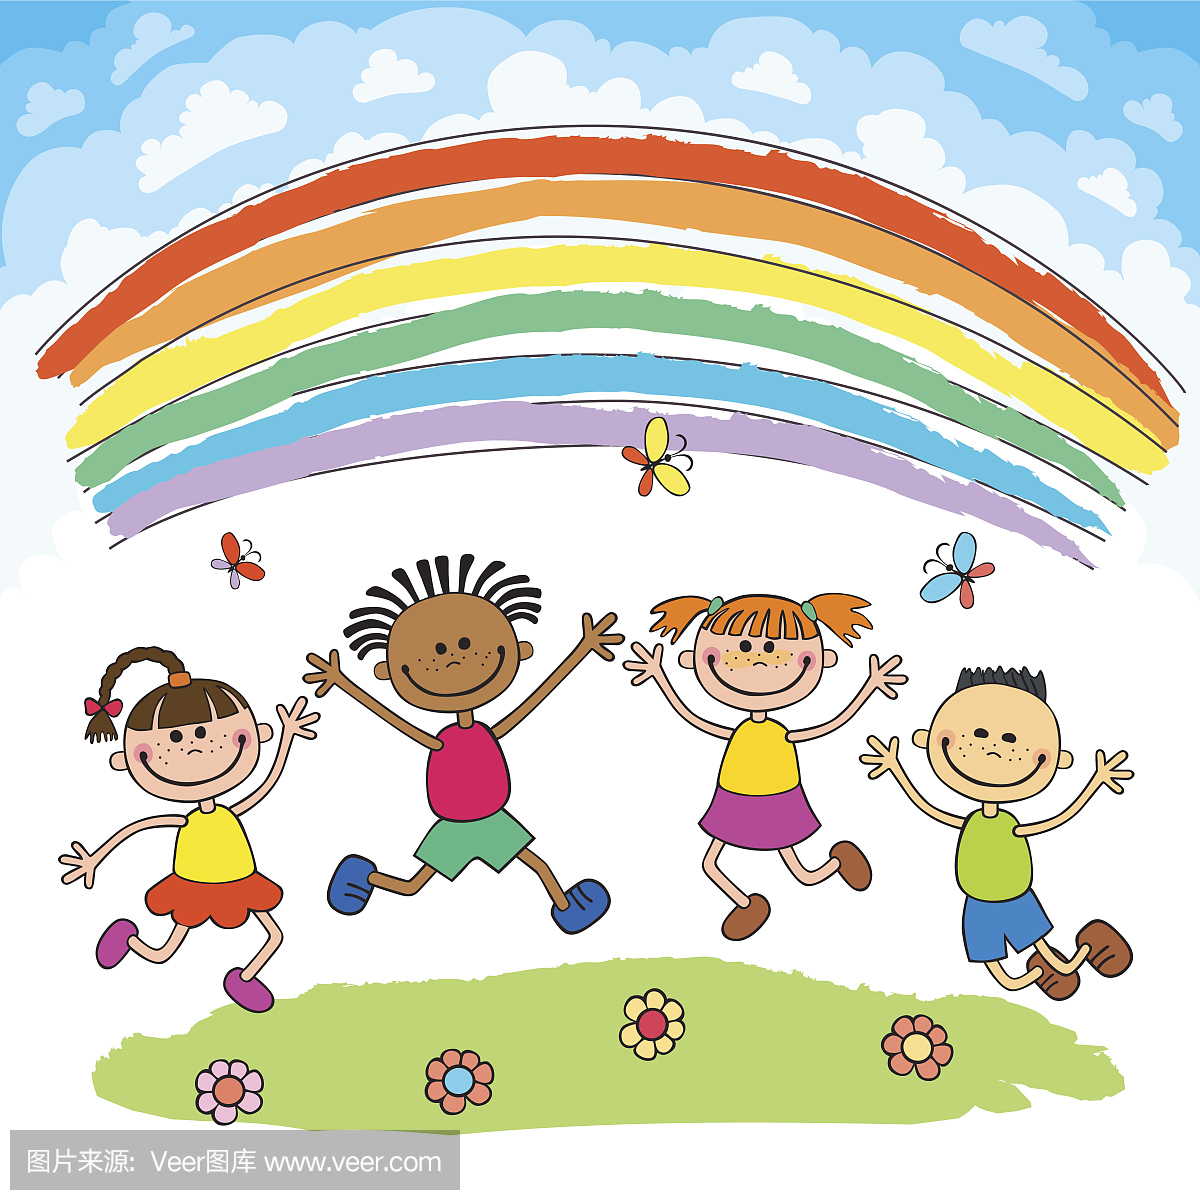 孩子们在彩虹,彩色卡通下的小山上欢乐地跳跃